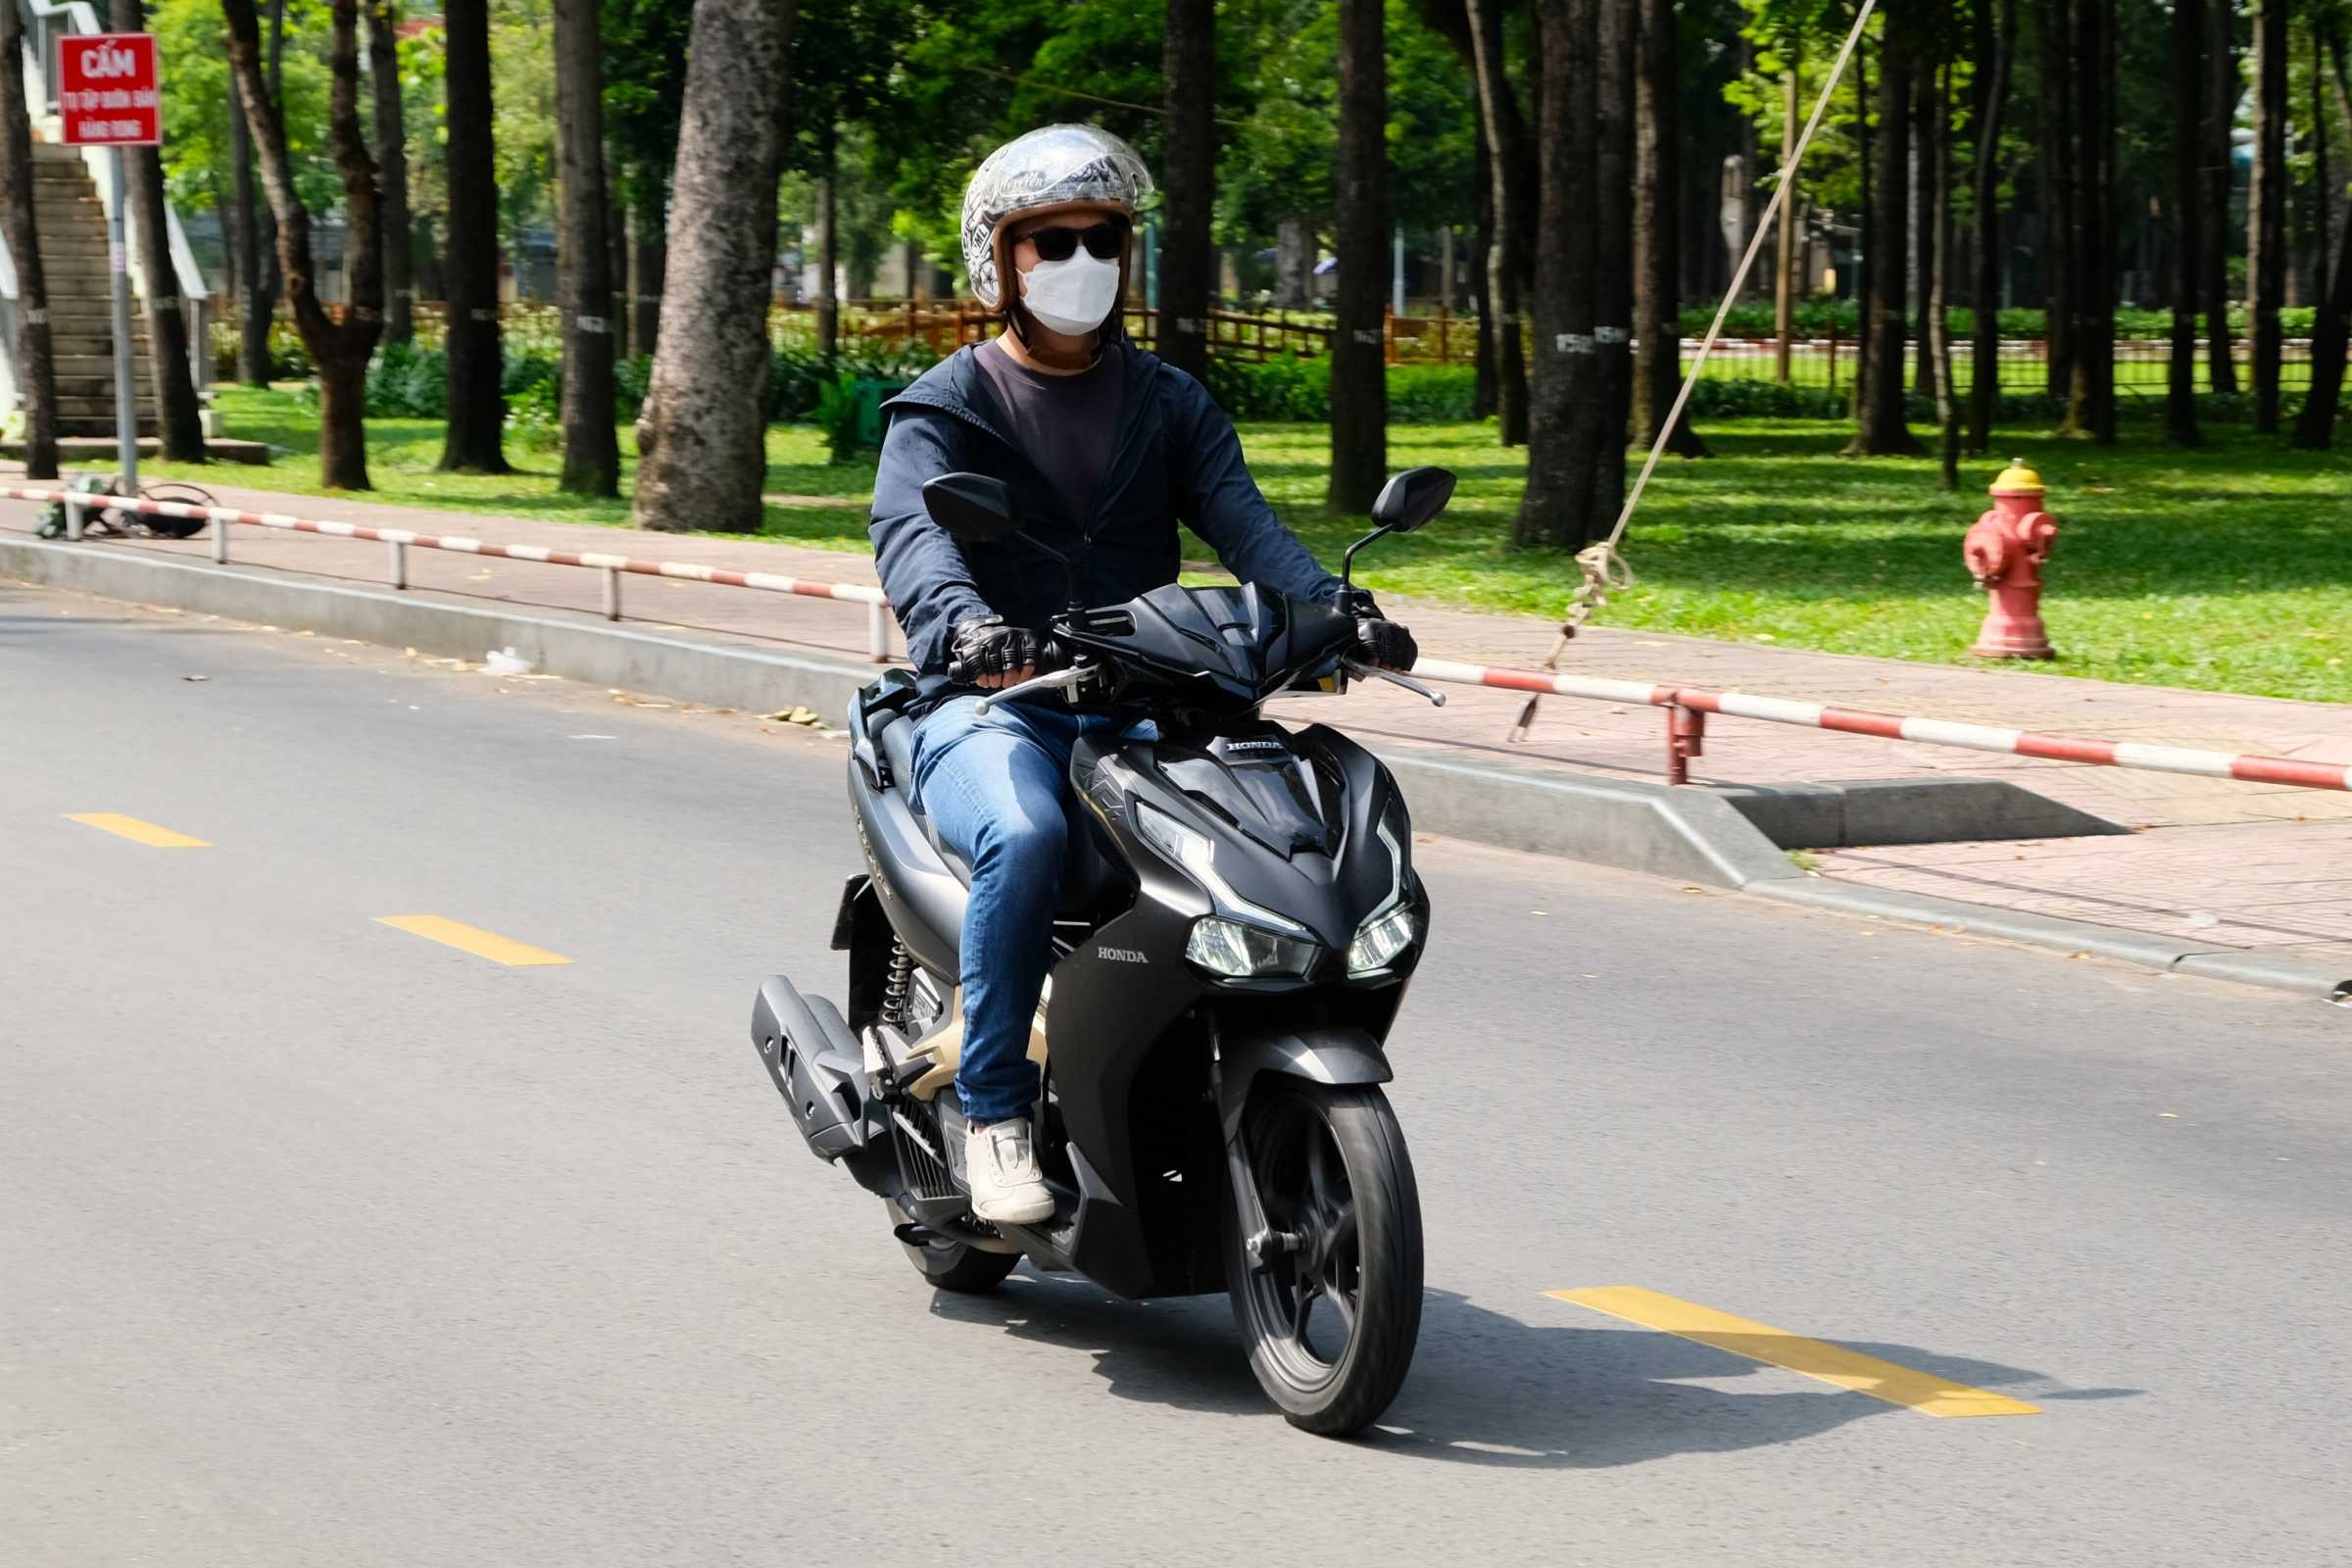 Bỏ túi bí kíp sử dụng xe máy trong mùa nắng nóng 40 độ C